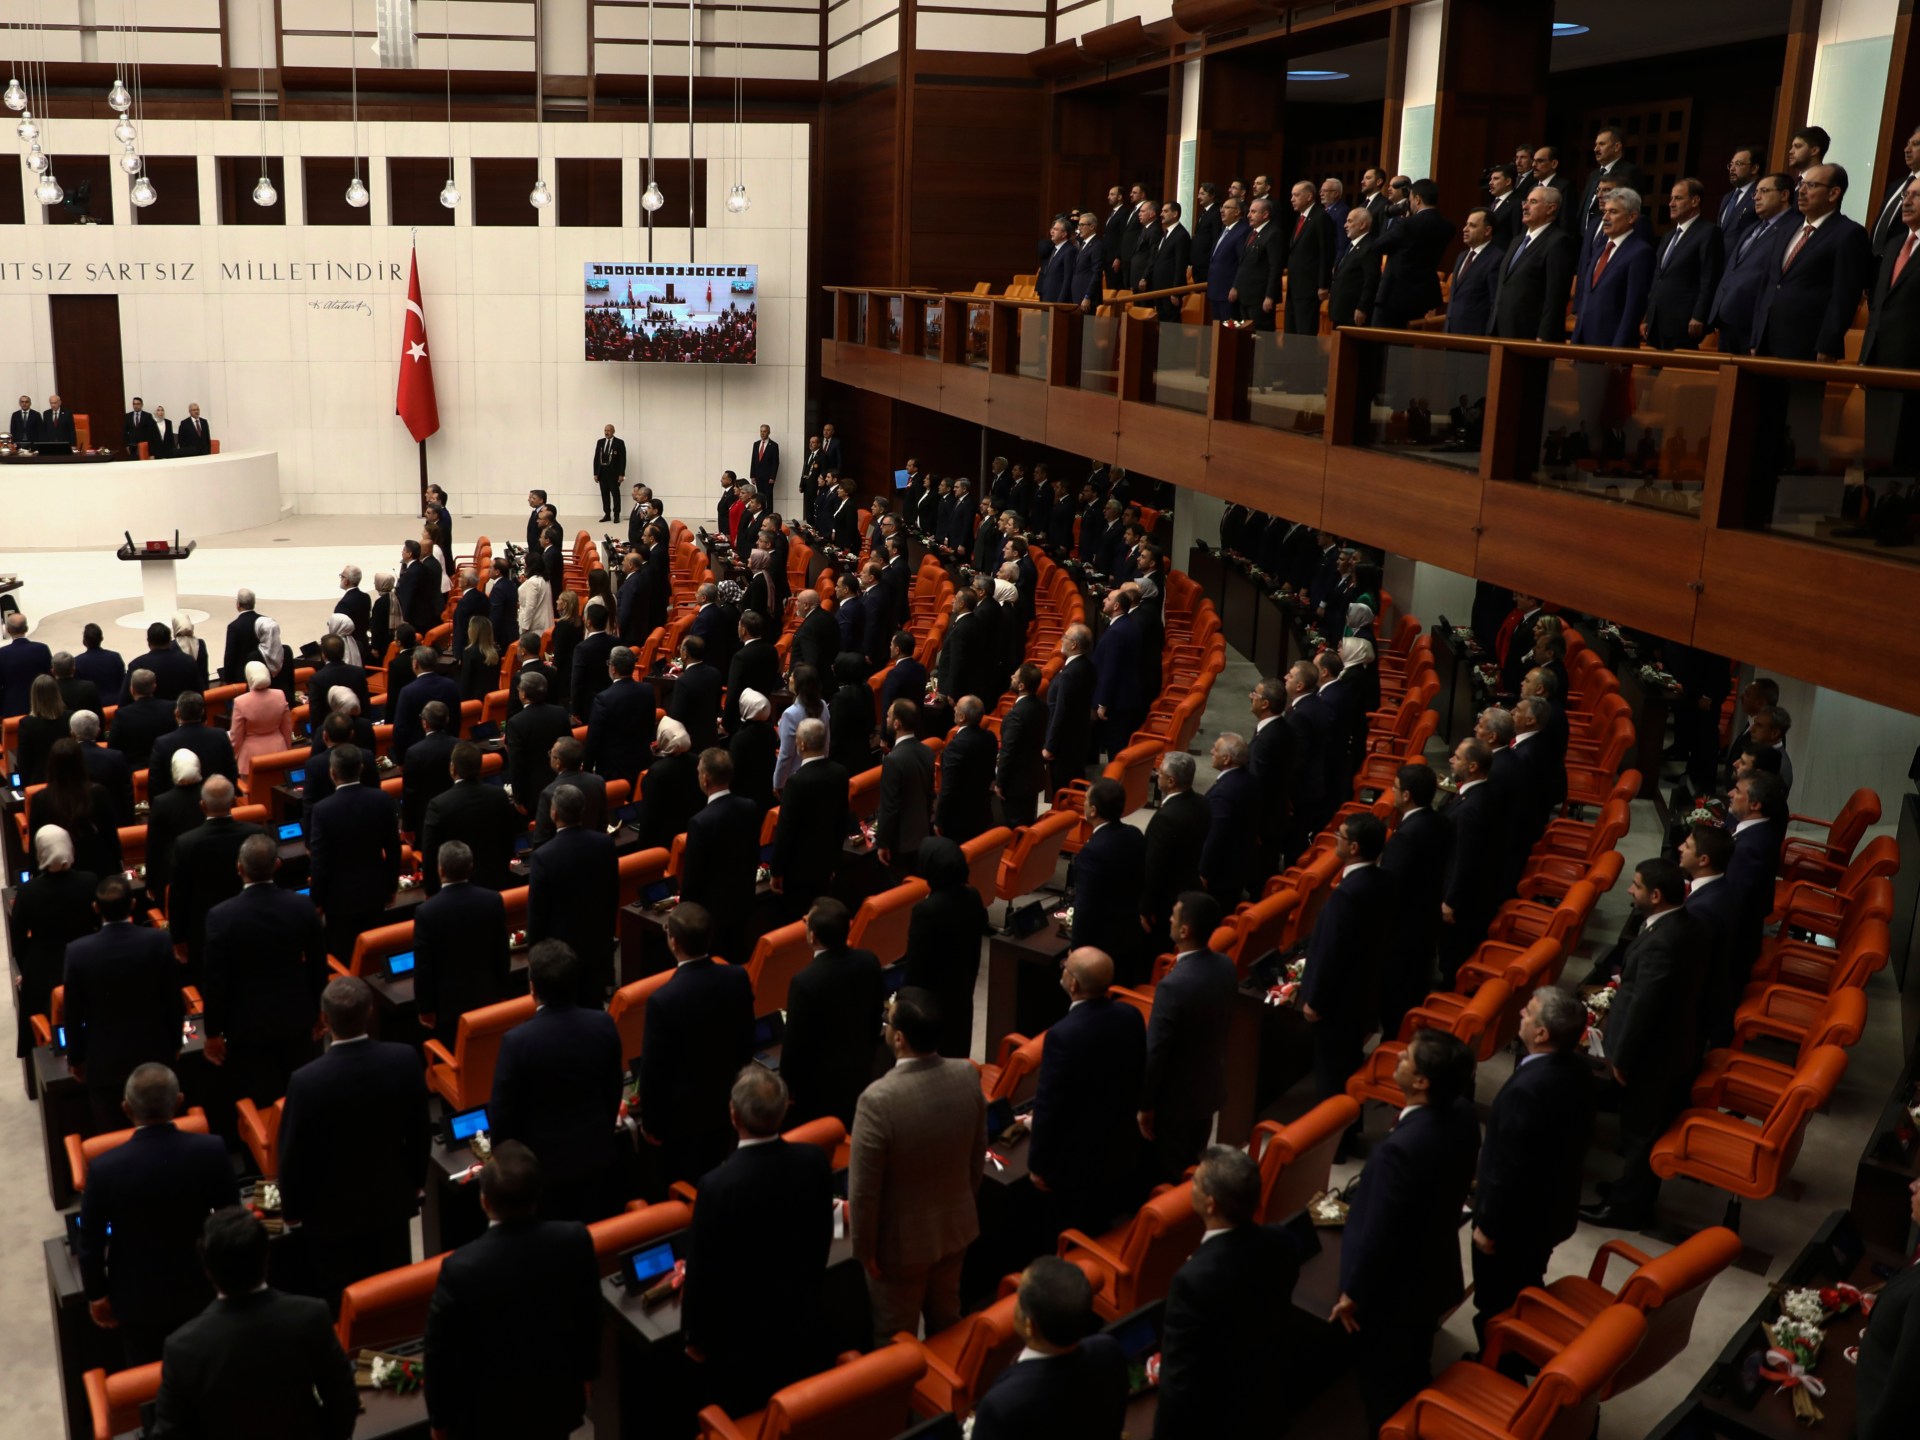 Siapa yang mencalonkan diri untuk memimpin parlemen Turki berikutnya?  |  Berita